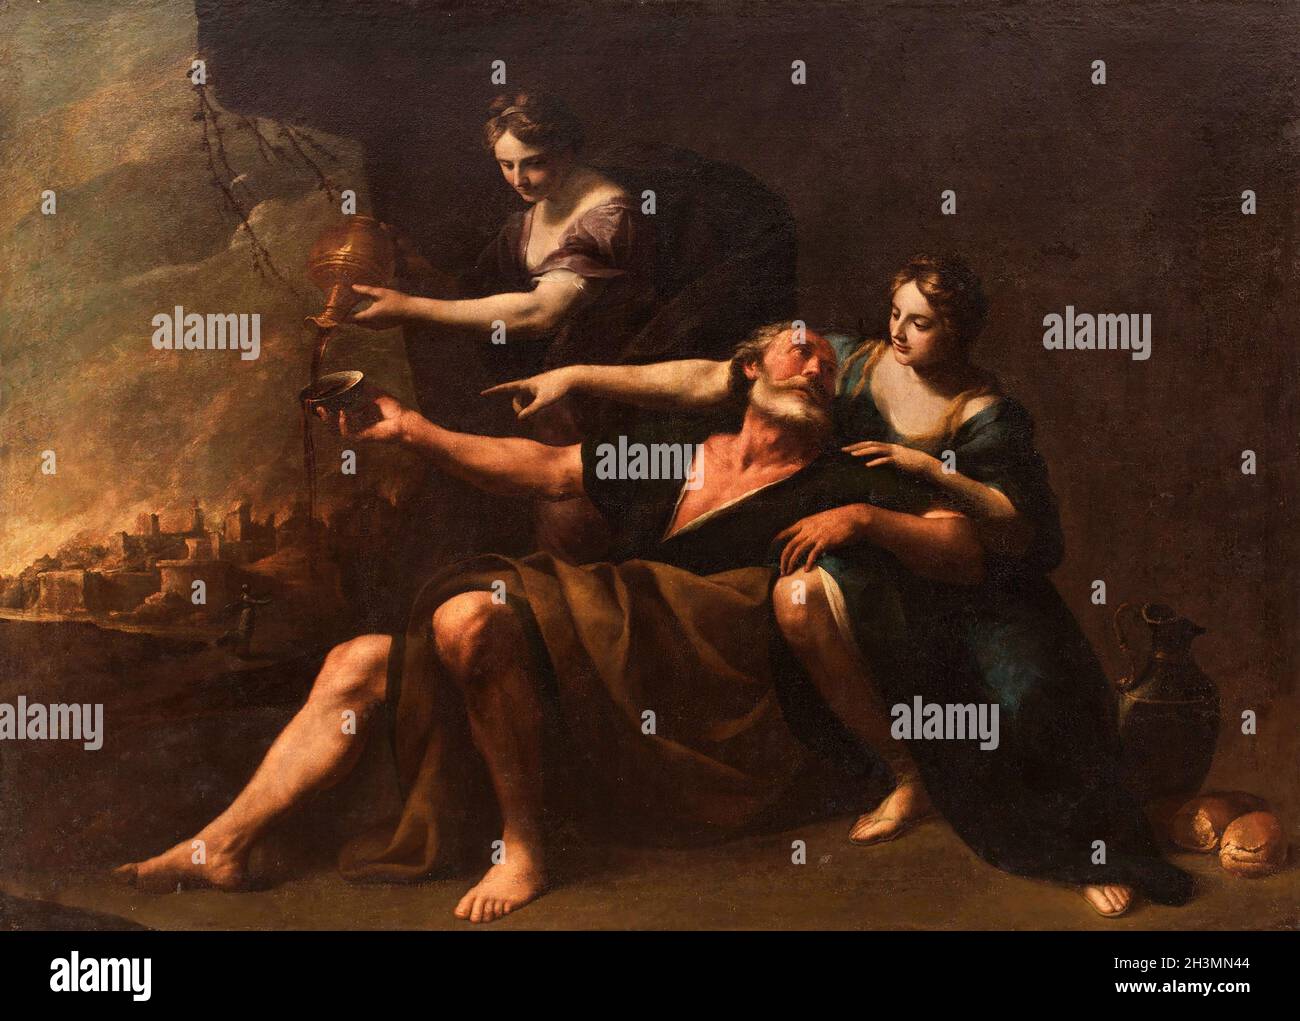 Lot von seinen Töchtern betrunken gemacht vom italienischen Künstler Andrea Vaccaro (1604-1670) , Öl auf Leinwand, 1640/70 Stockfoto